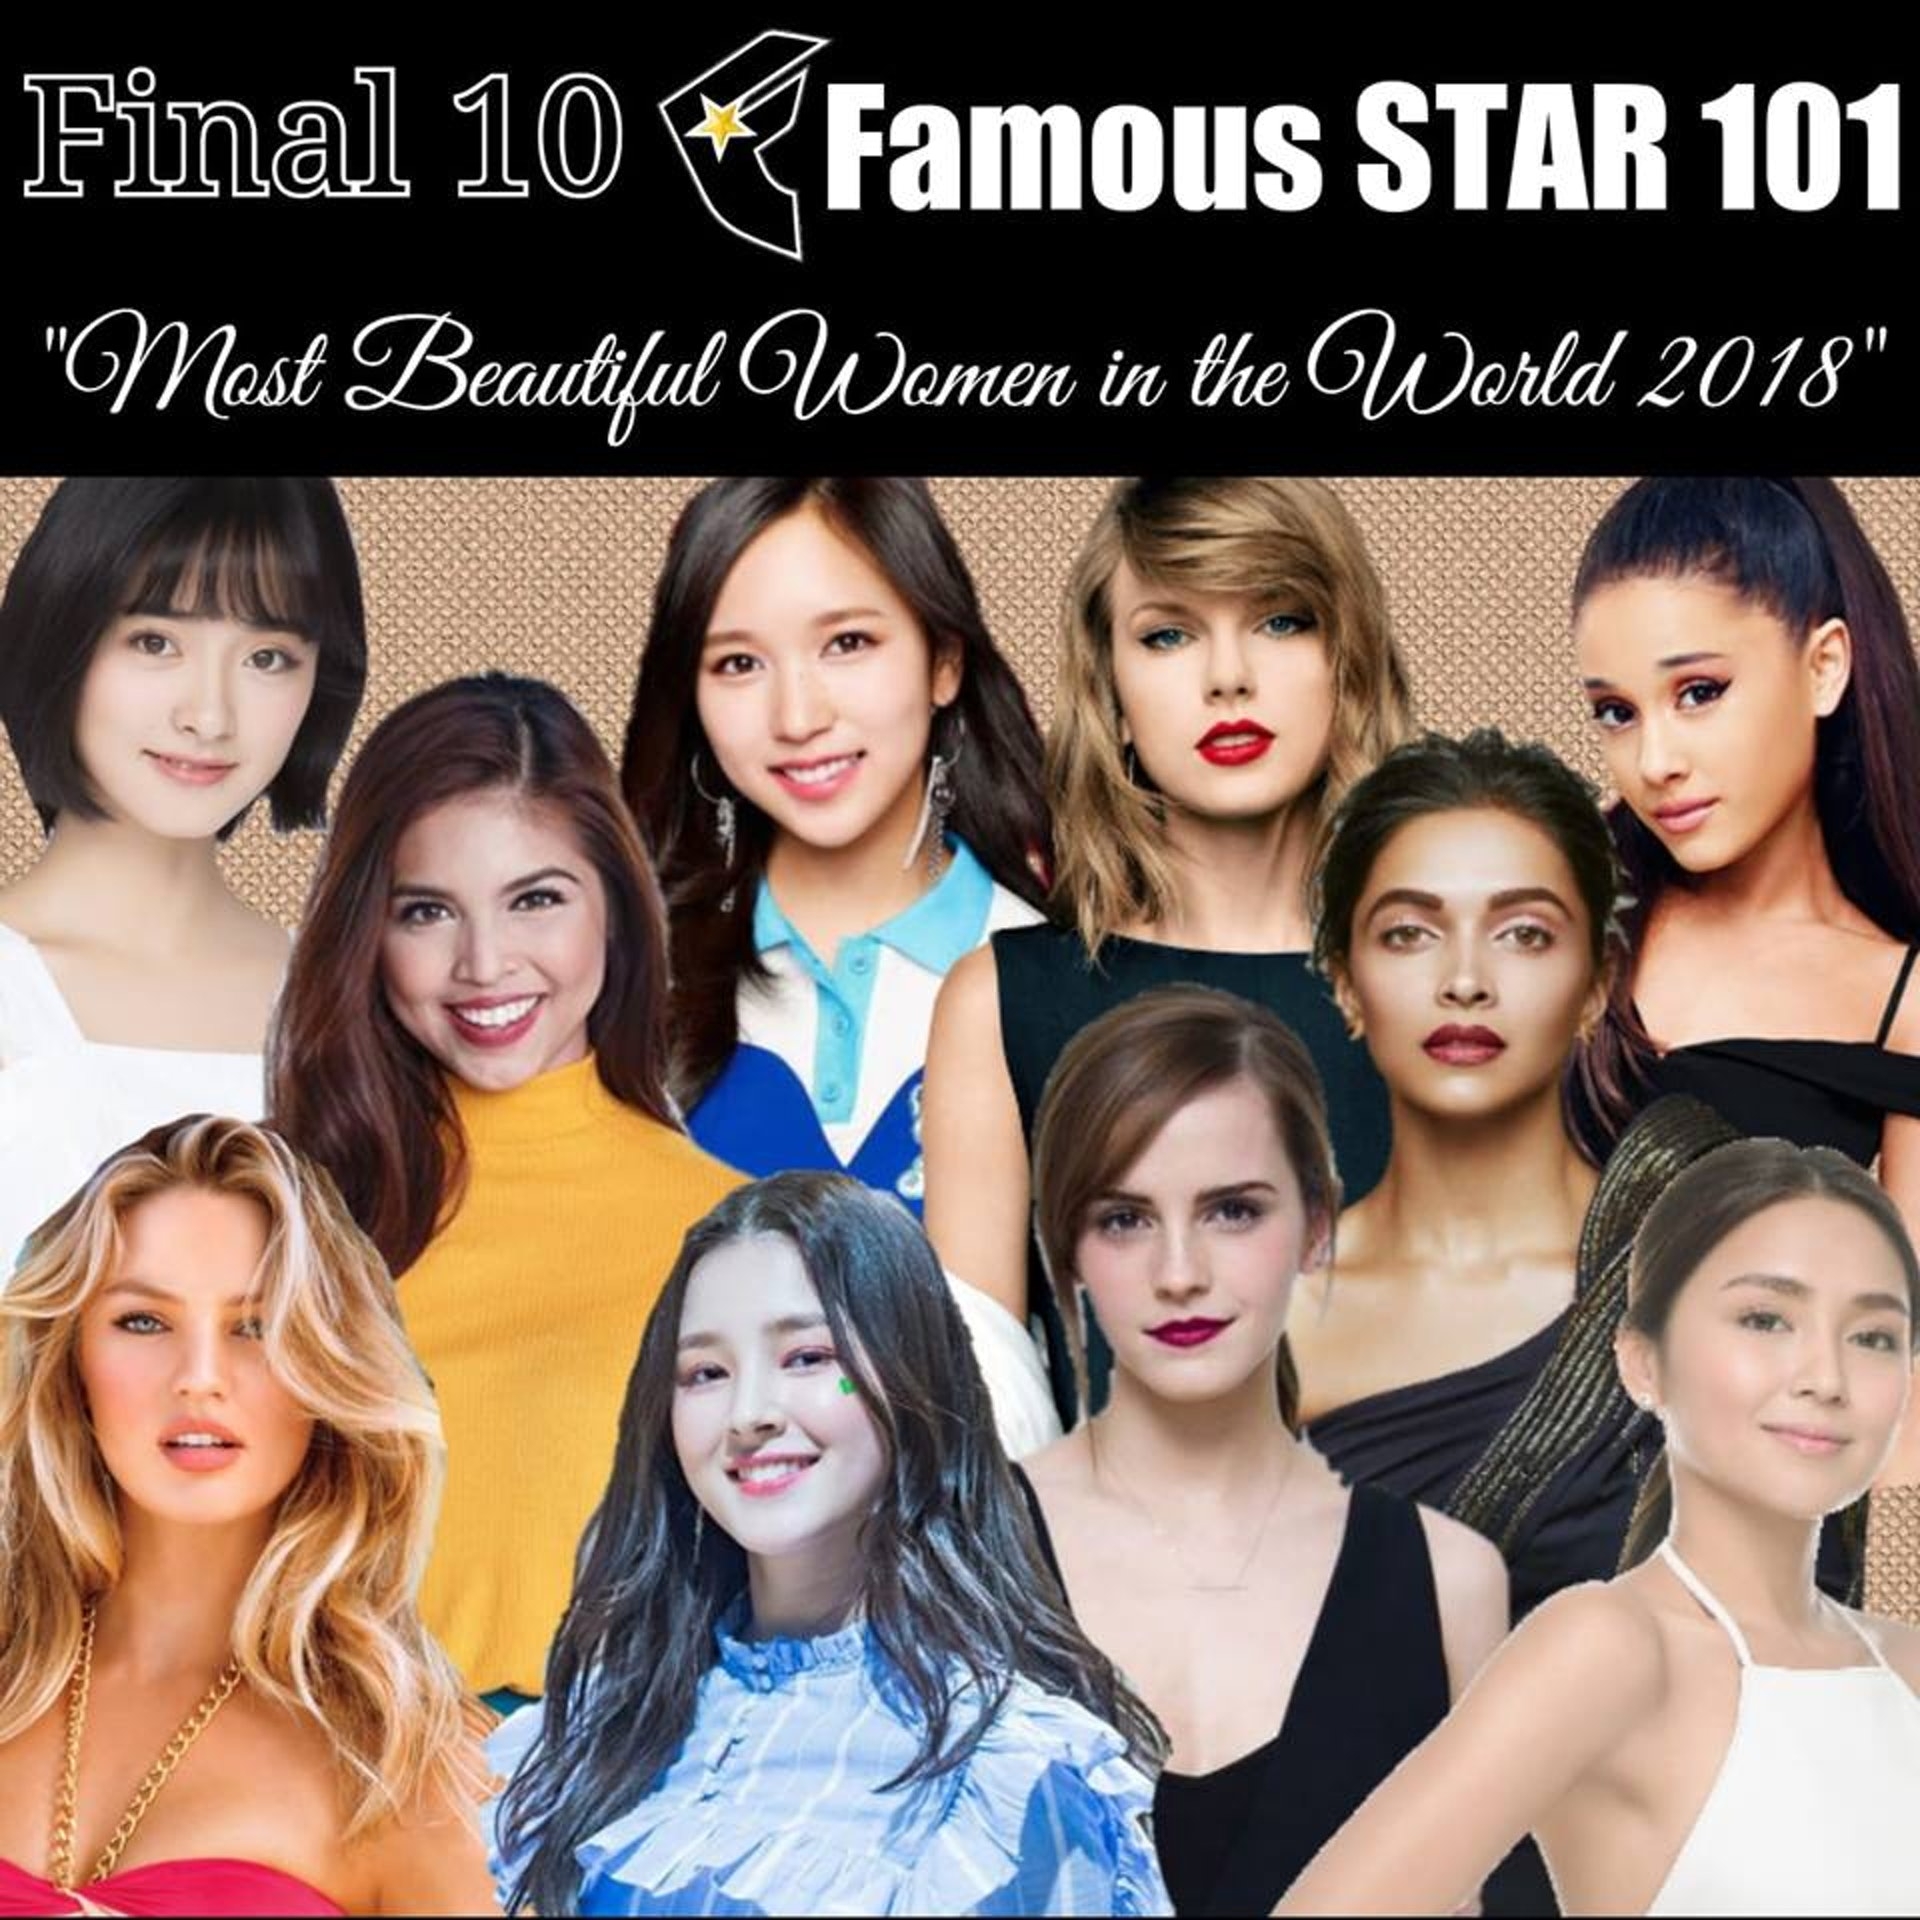 而在这之前,《famous star 101》还宣布了「2018全球最美女星top10」